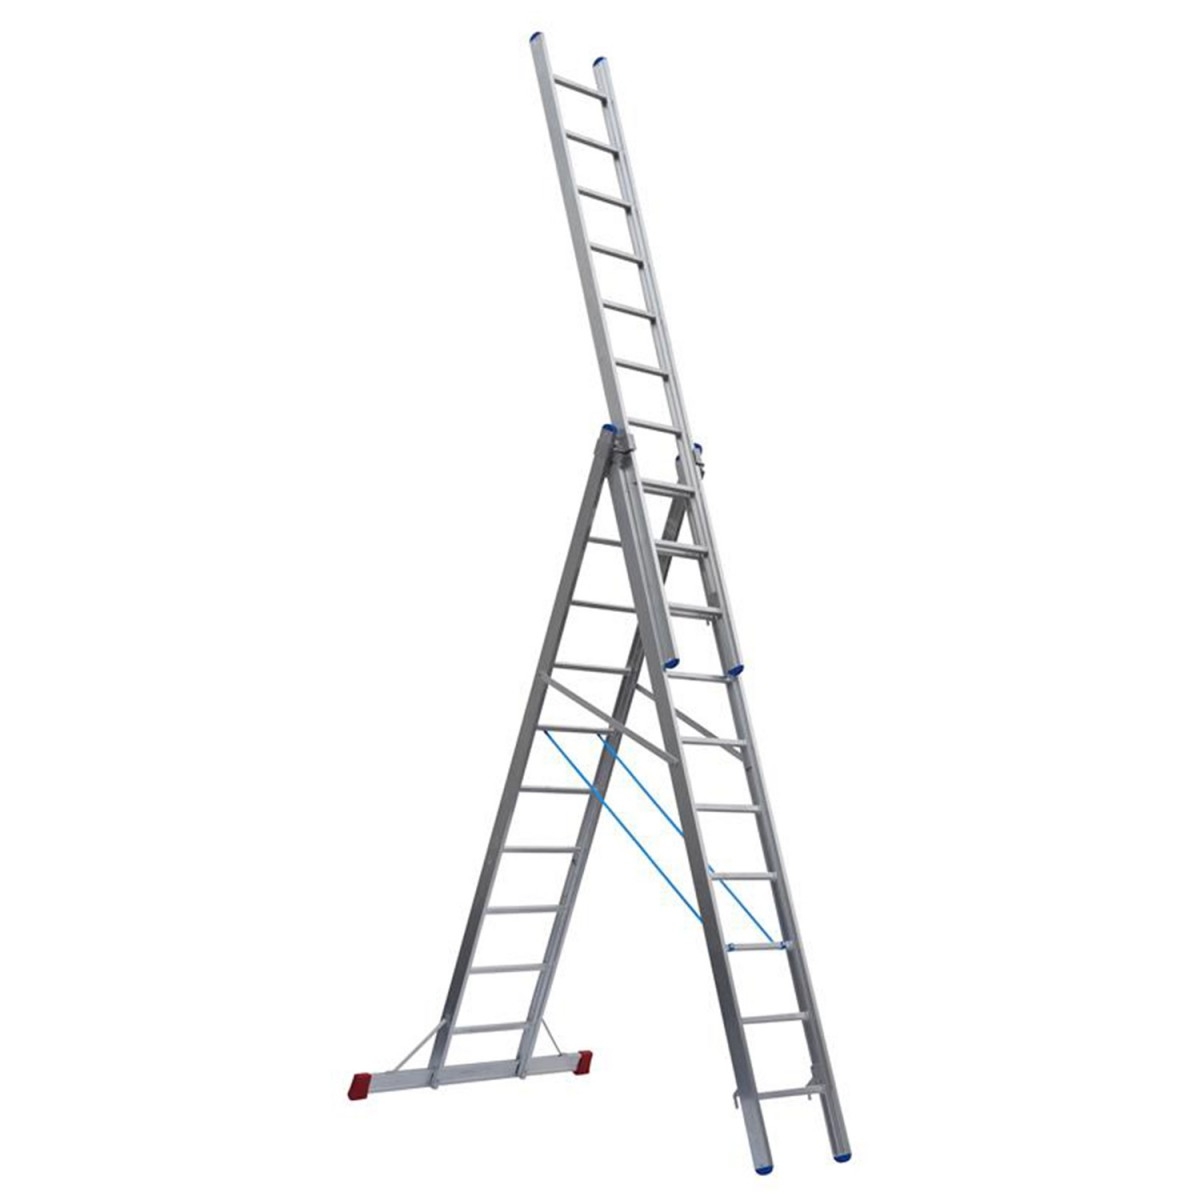 Mehrzweckleiter "Industrieausführung" 3-teilig, 41/47/53 cm breit mit Aussteifungsstreben an den Leiternteilen, 3x10 Sprossen/Stufen